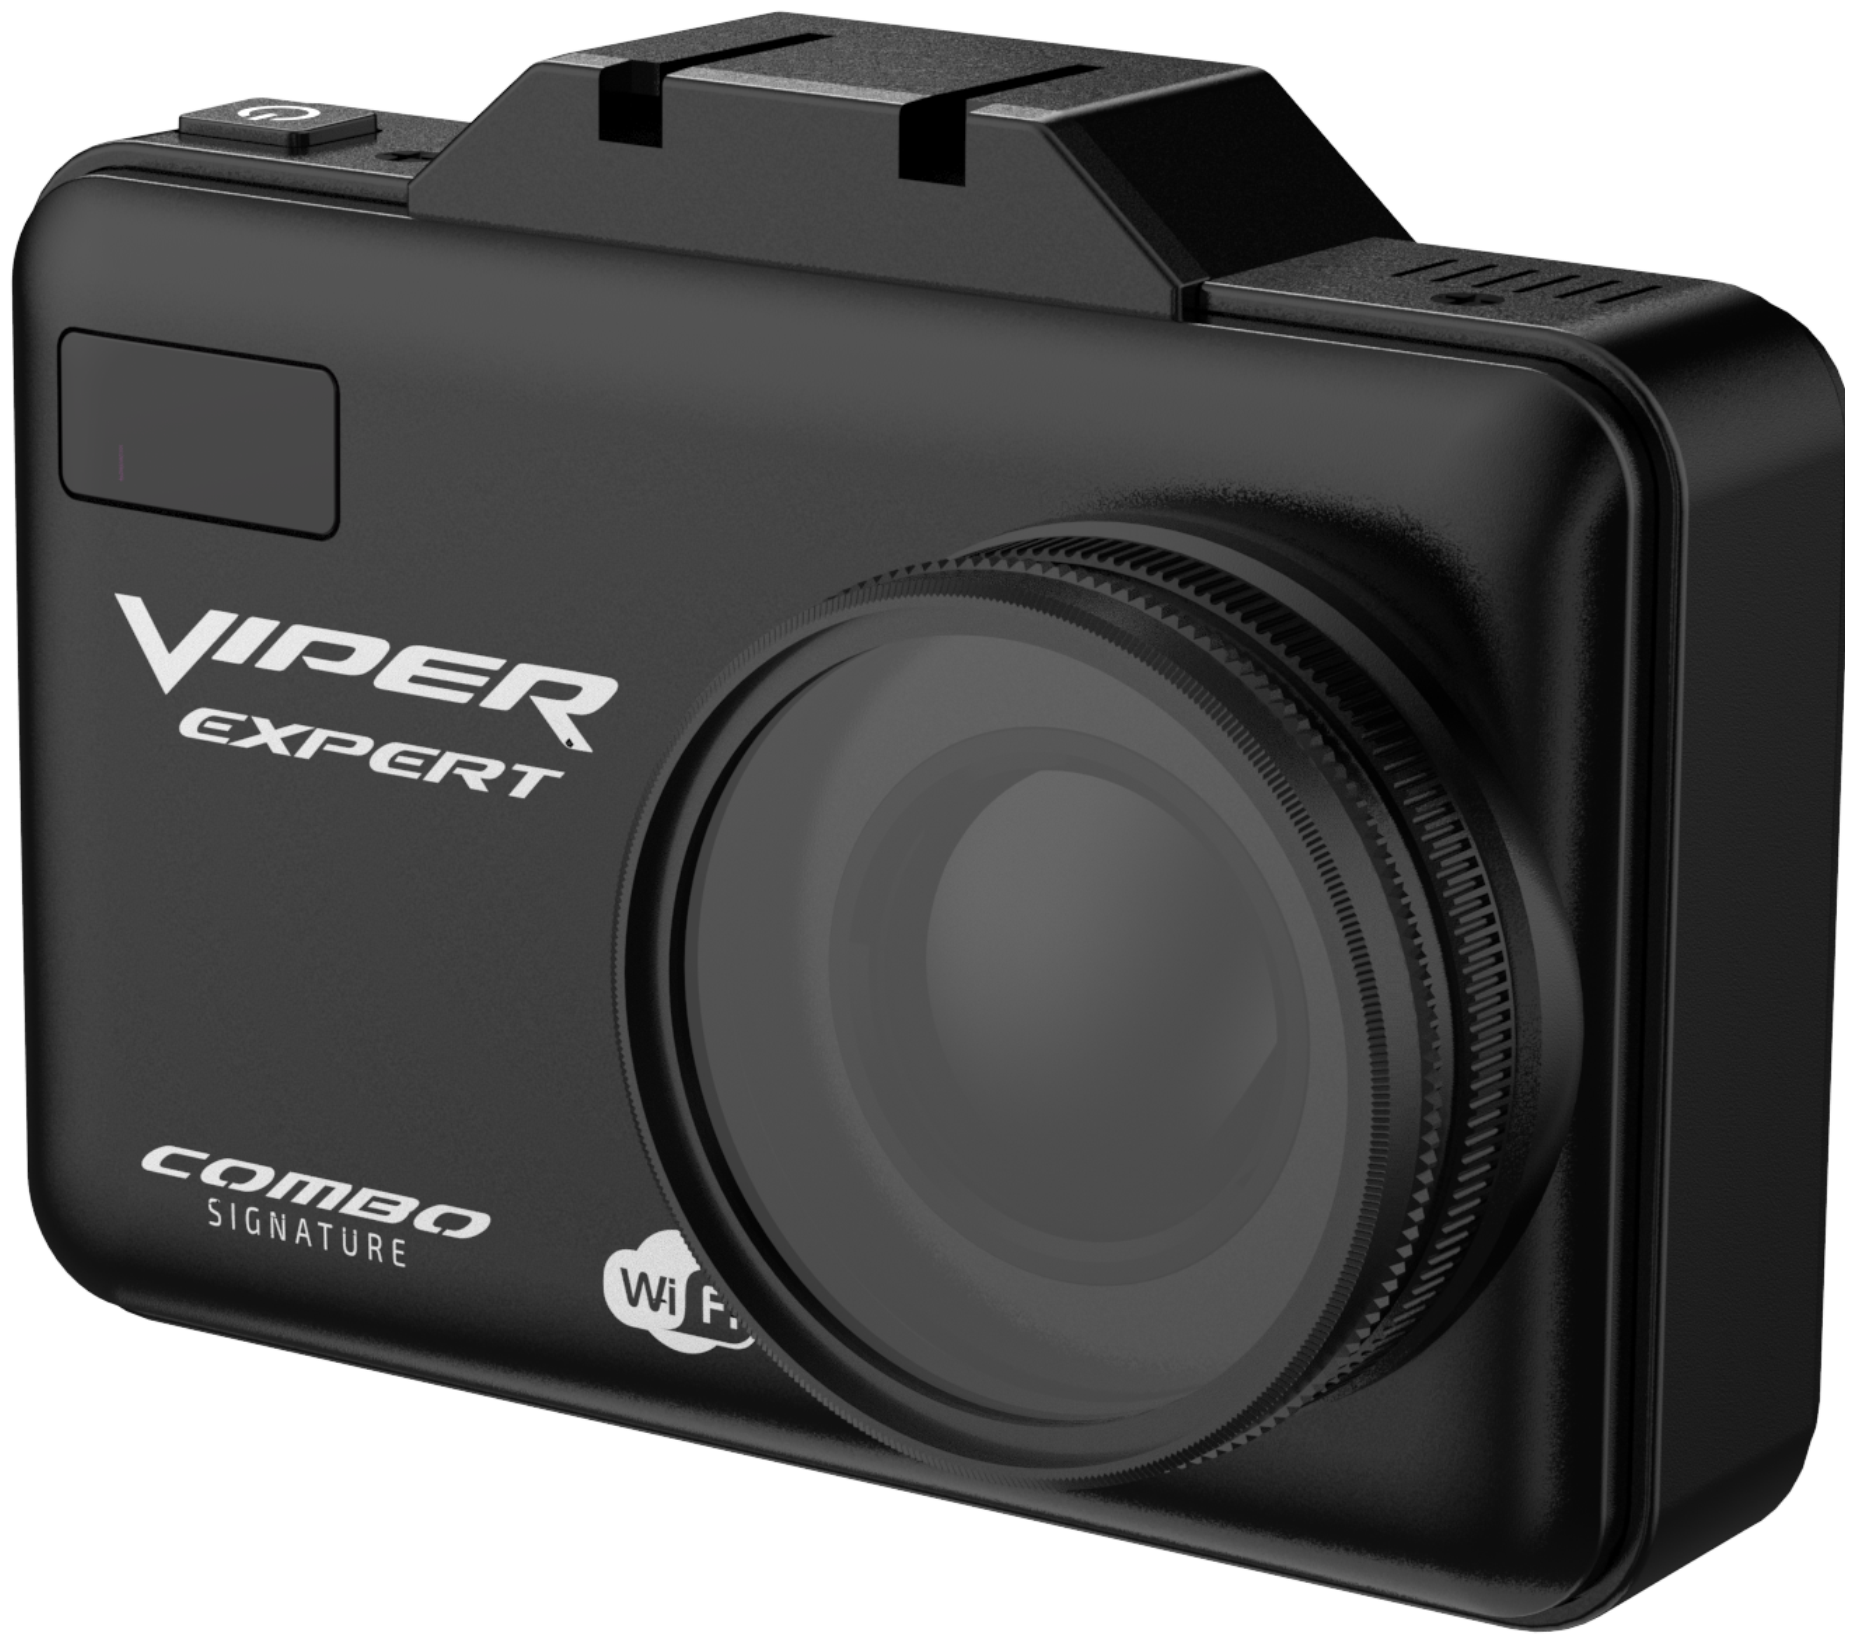 Видеорегистратор c радар-детектором Viper Combo Expert Wifi , опционально CPL фильтром New